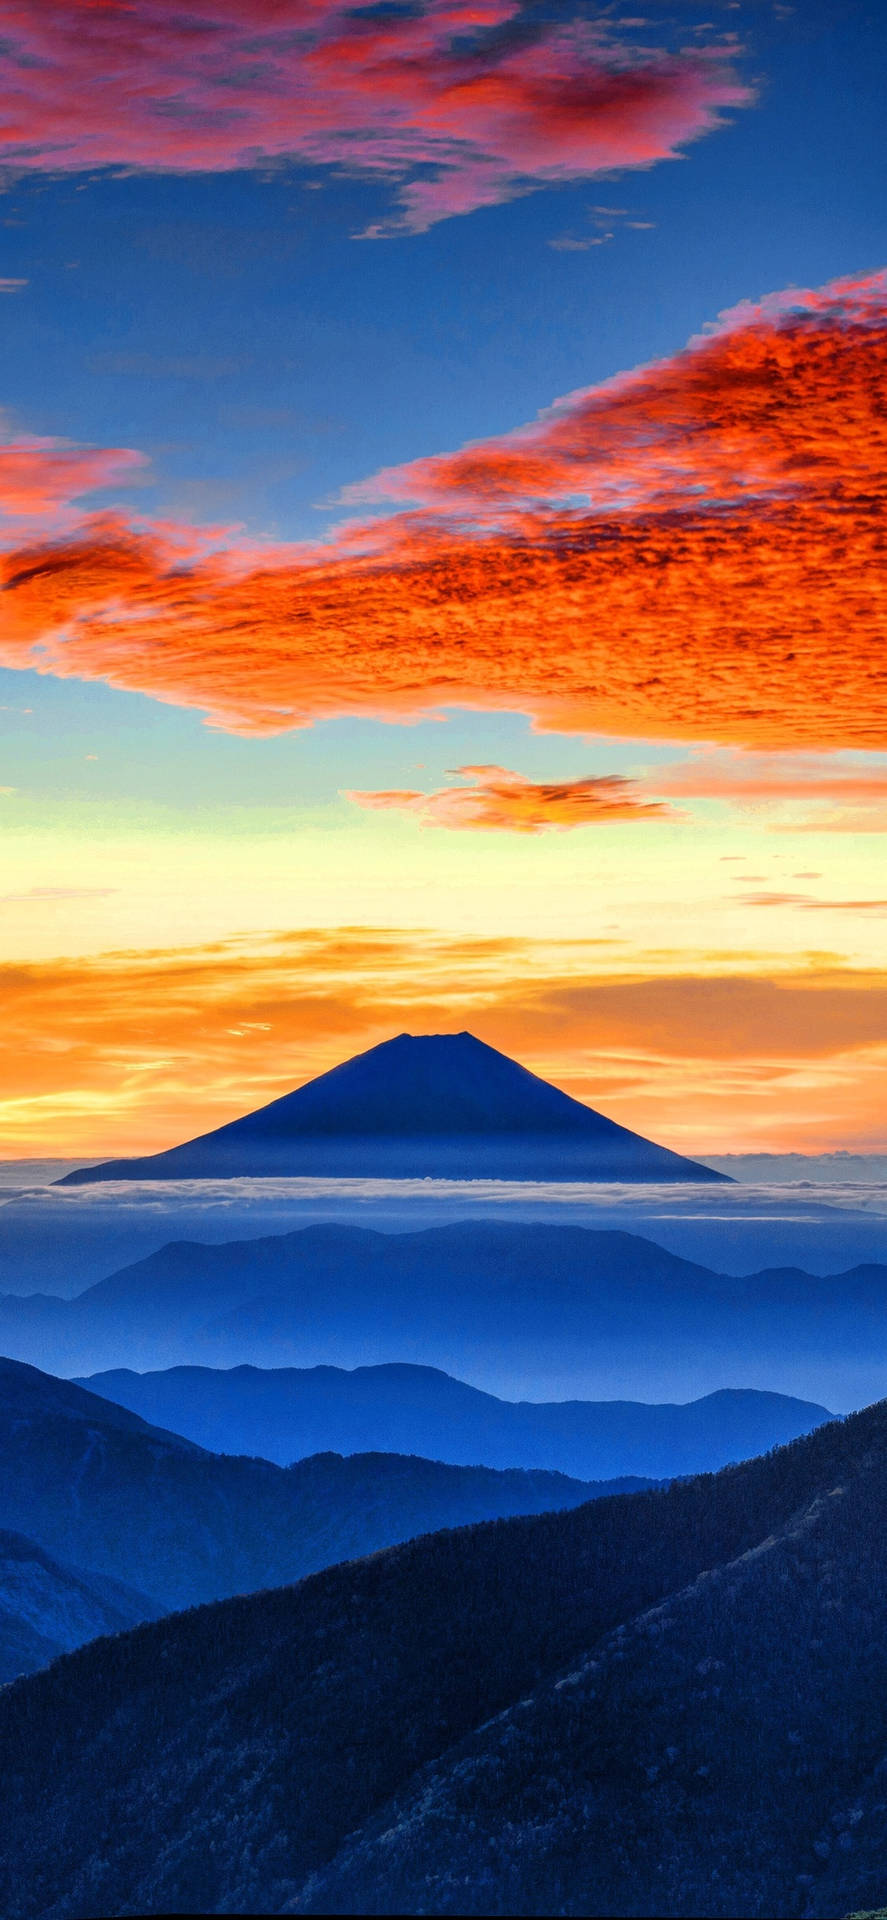 8K iPhone Mount Fuji Wallpaper